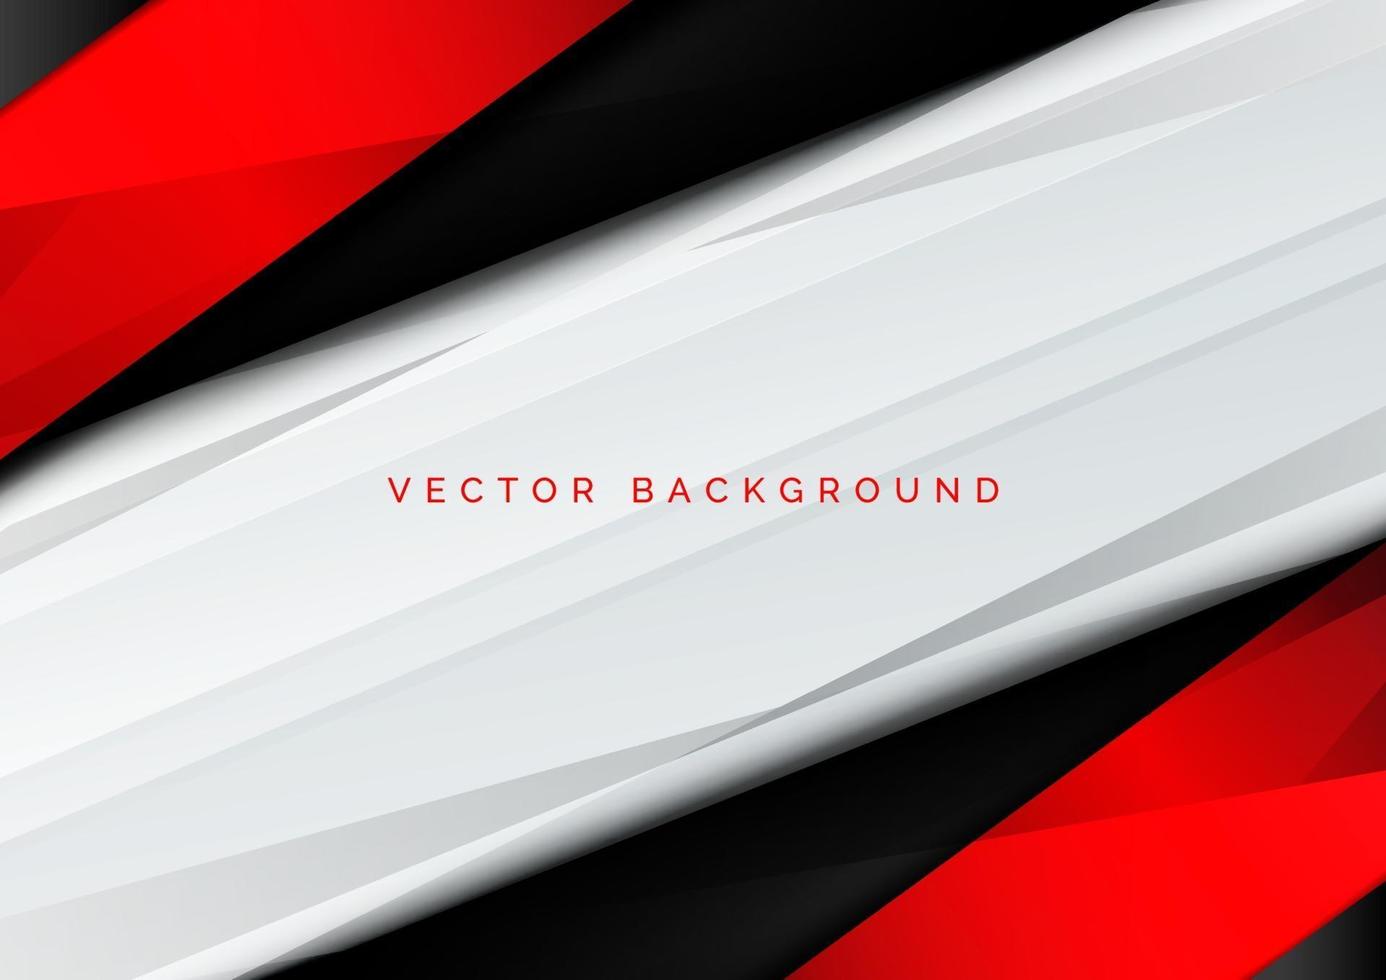 modèle de bannière corporative concept rouge noir fond de contraste gris et blanc. vecteur